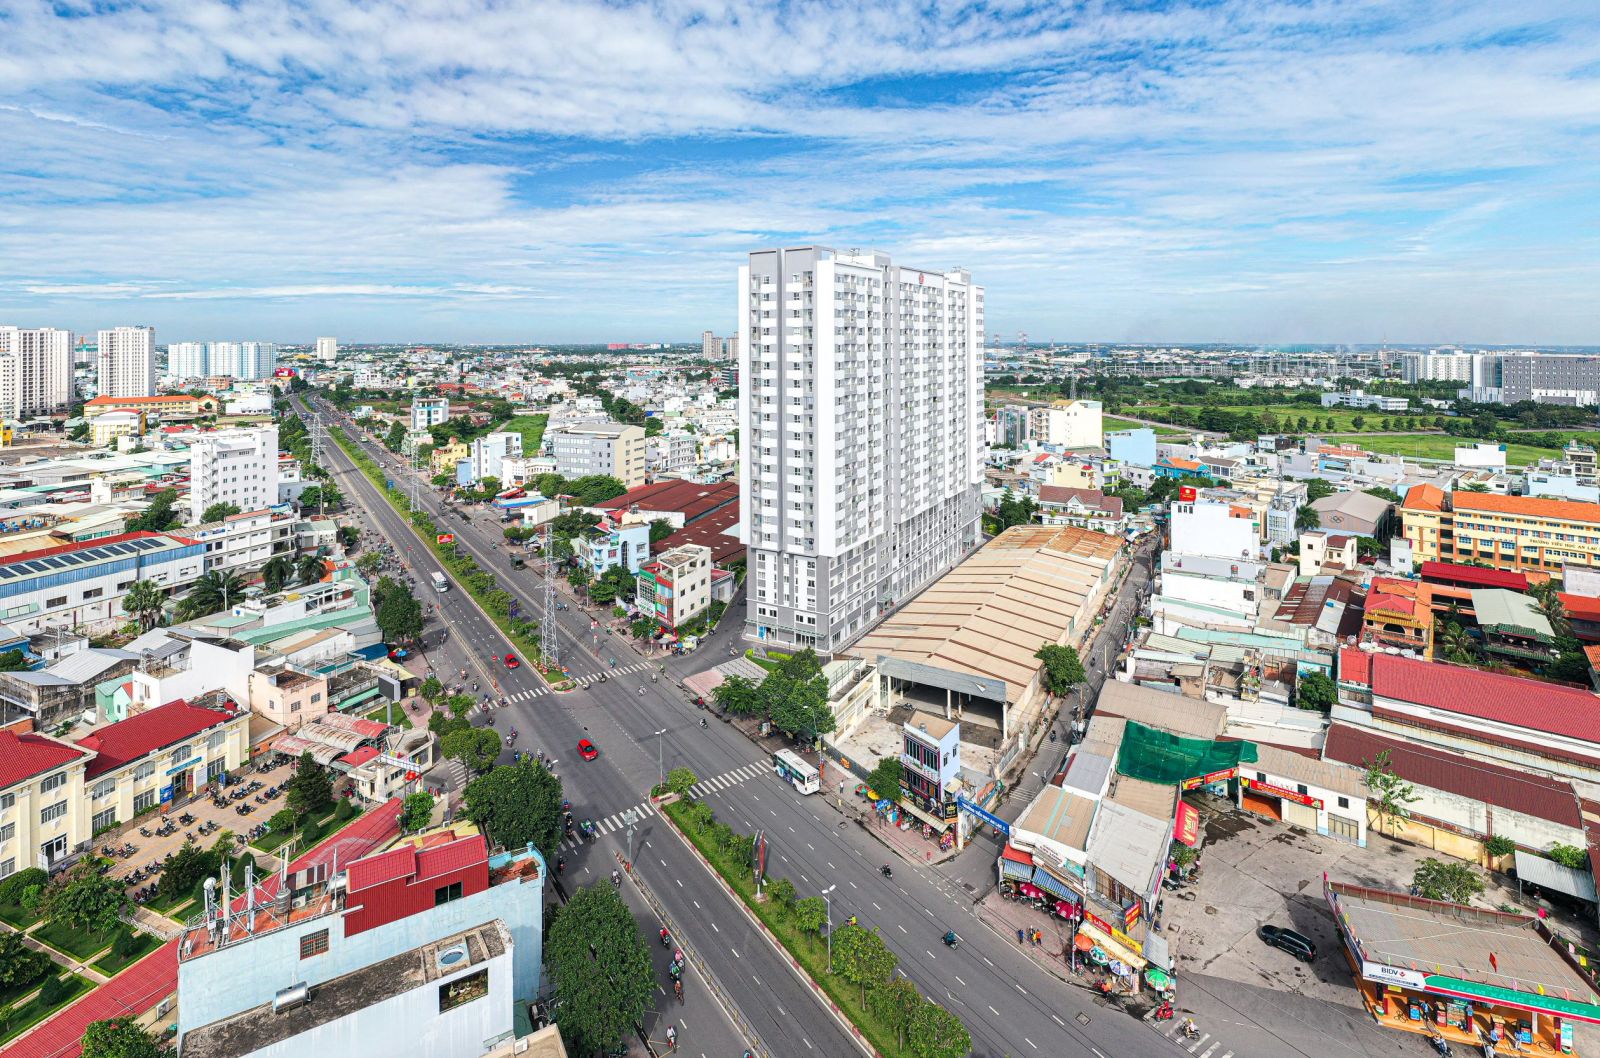 Quận Bình Tân, một trong những nơi lựa chọn ưa thích của người Tây Nam Bộ. Ảnh: Hưng Thịnh Land